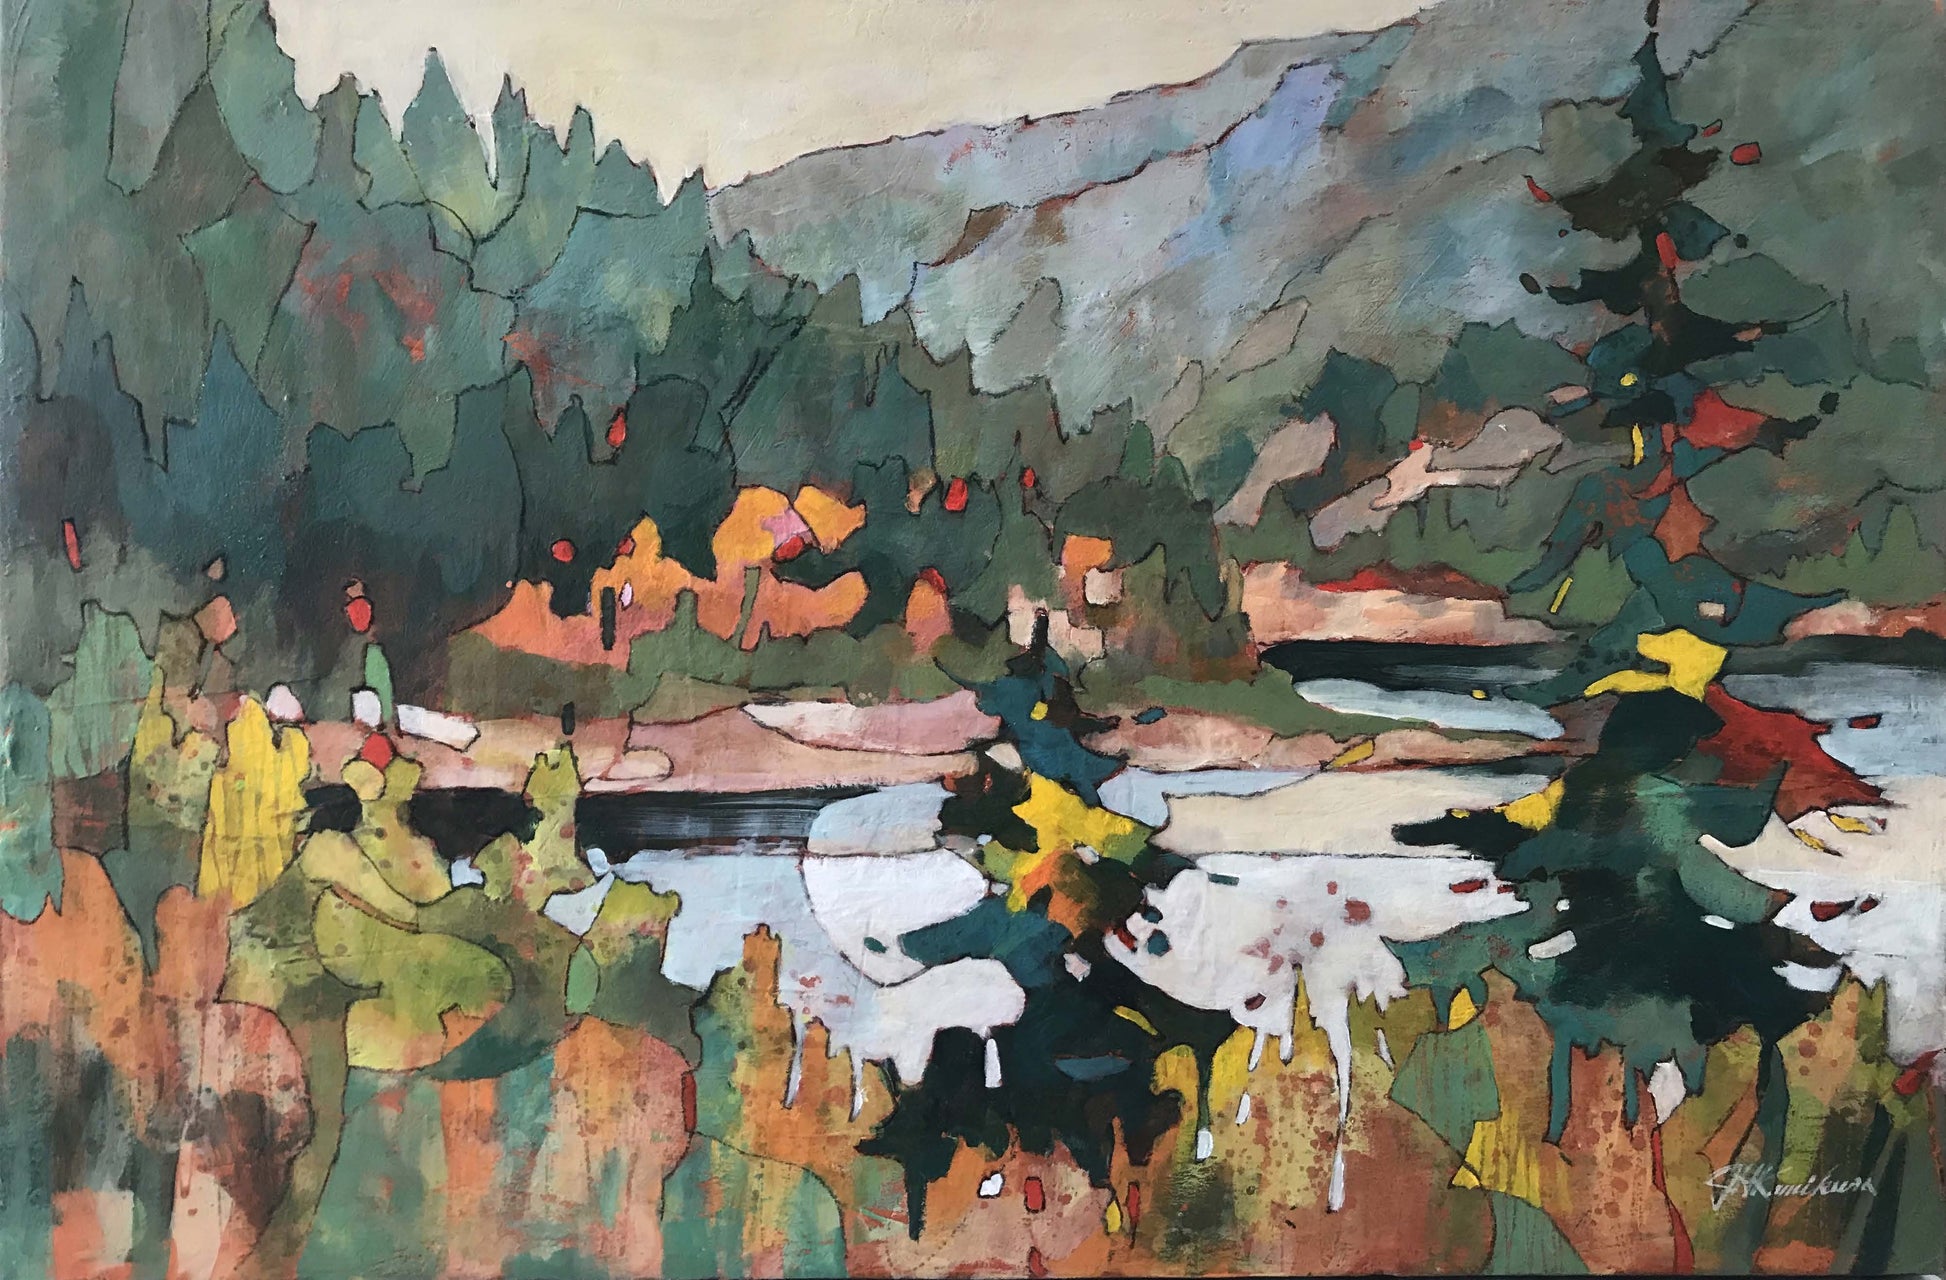 Joyce Kamikura painting Selkirk Range Art Works Gallery